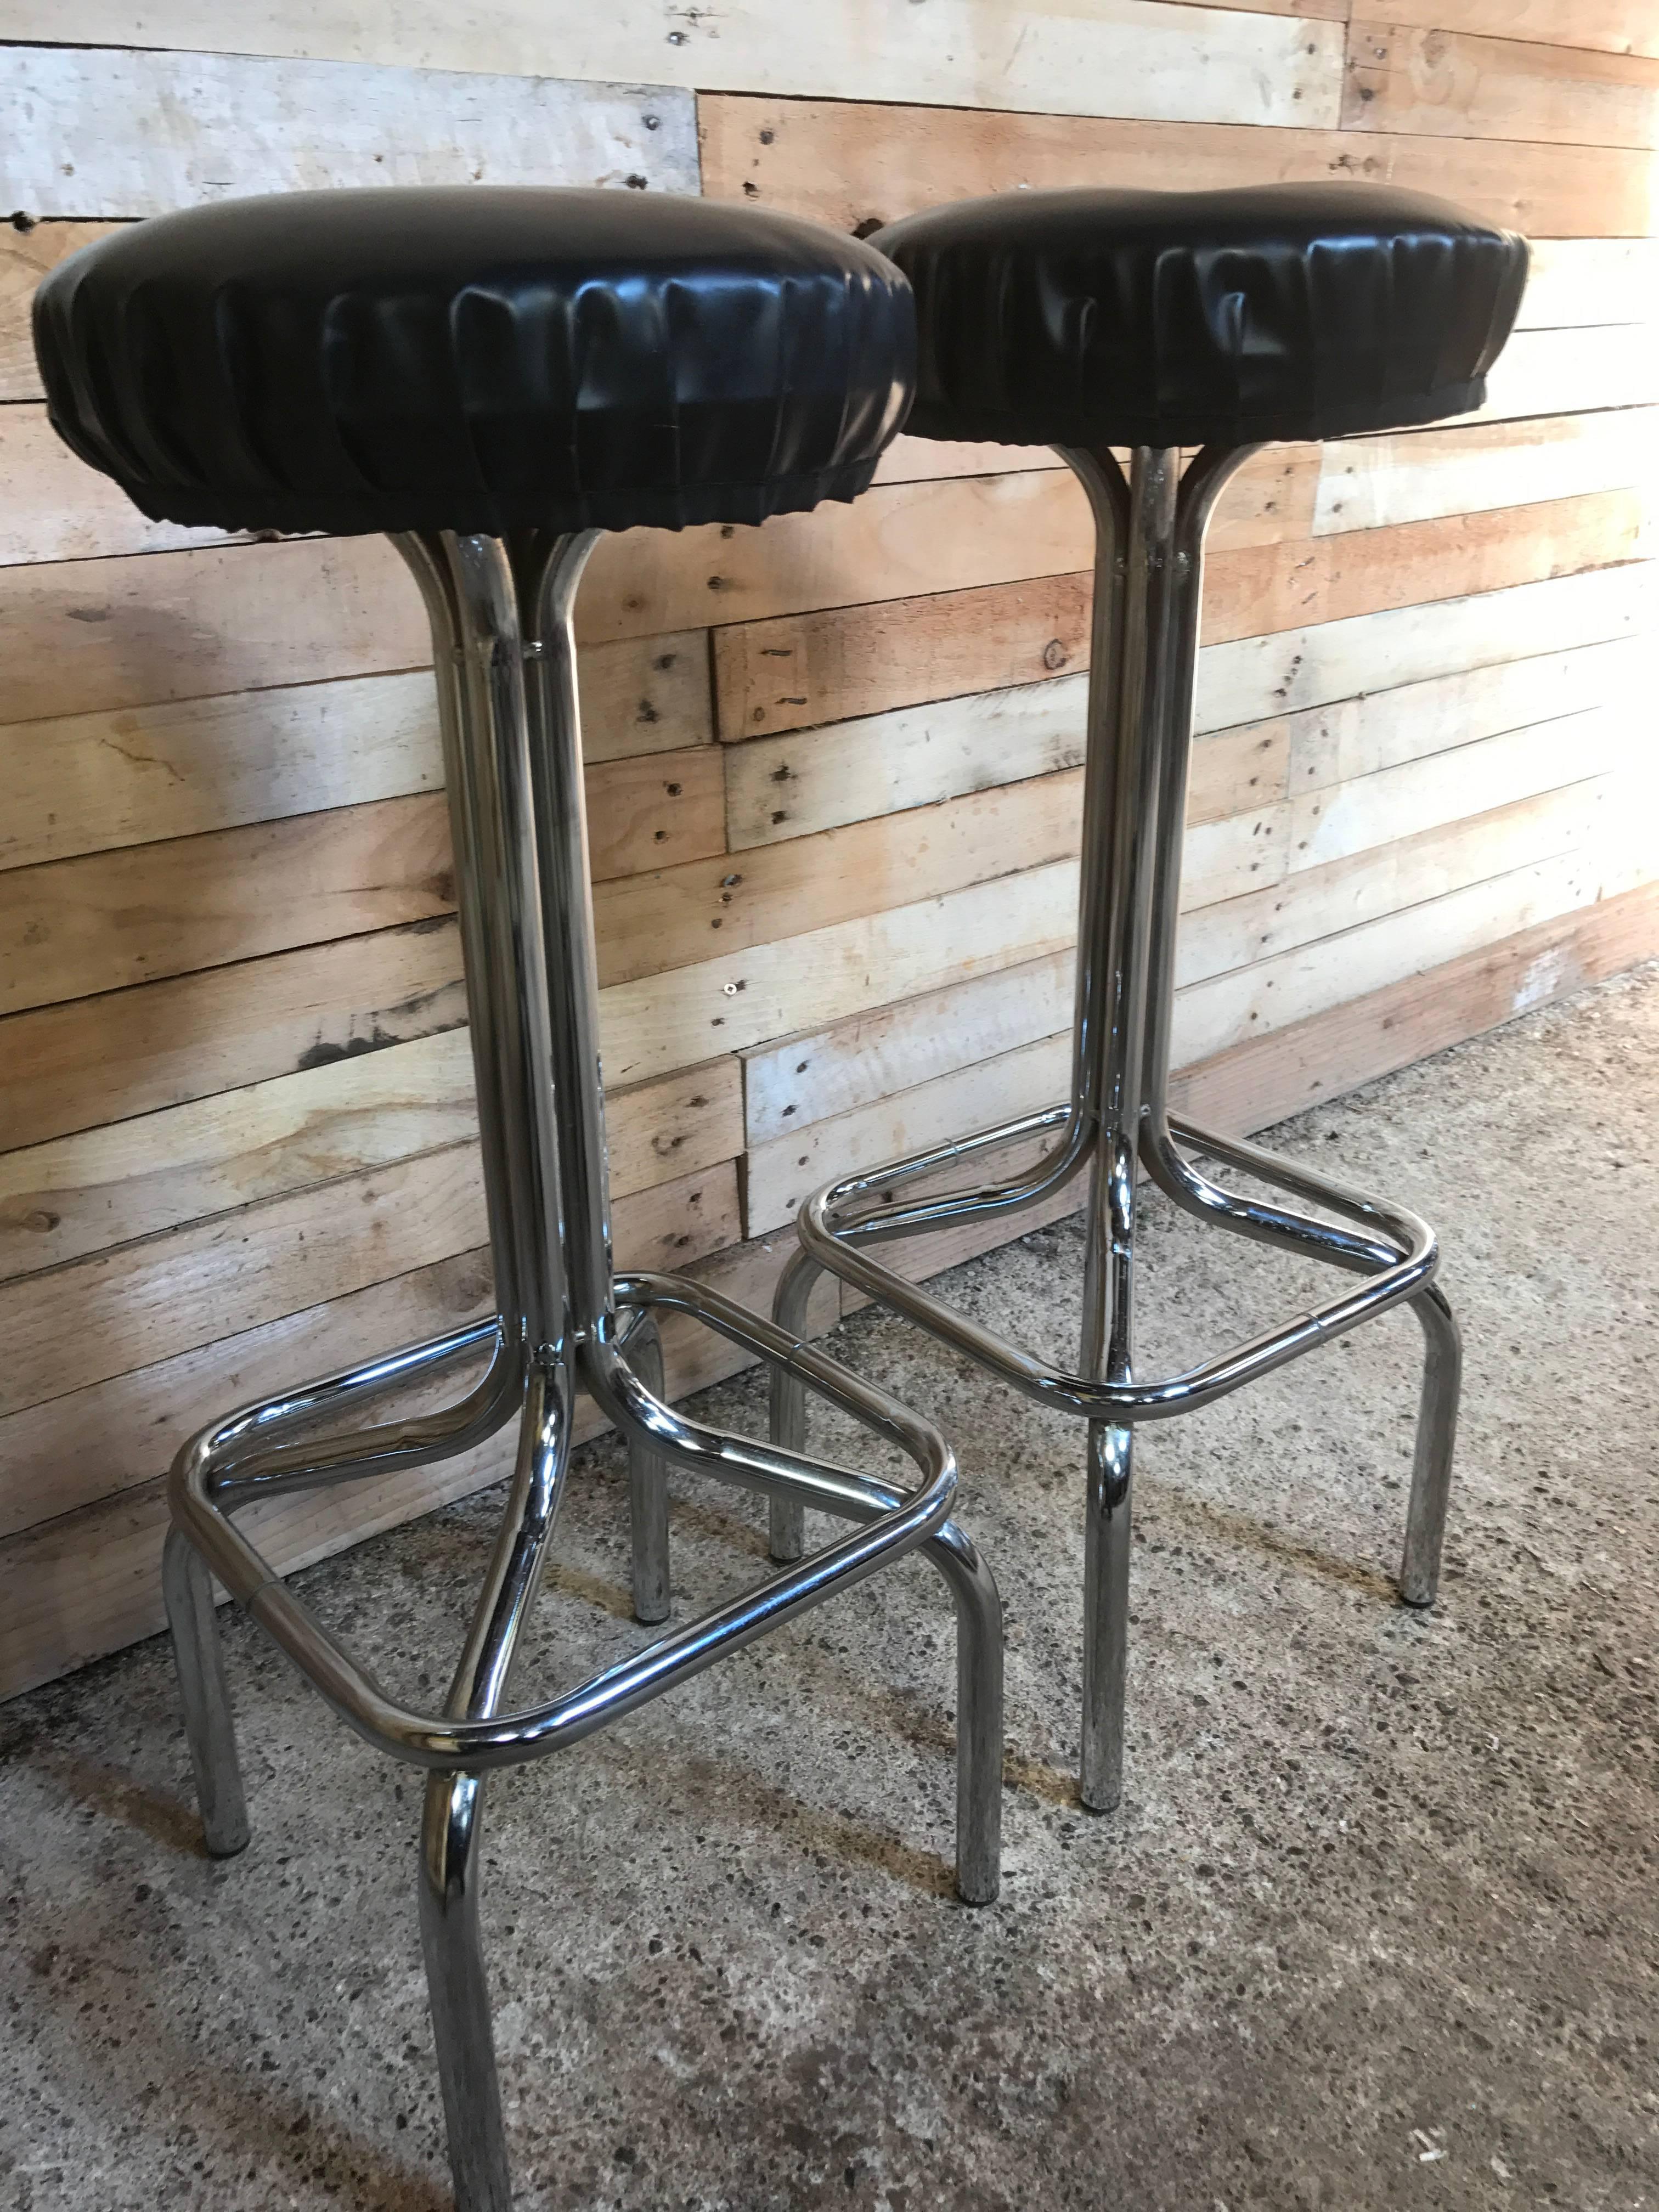 Original 1950s chrome high or bar stools.